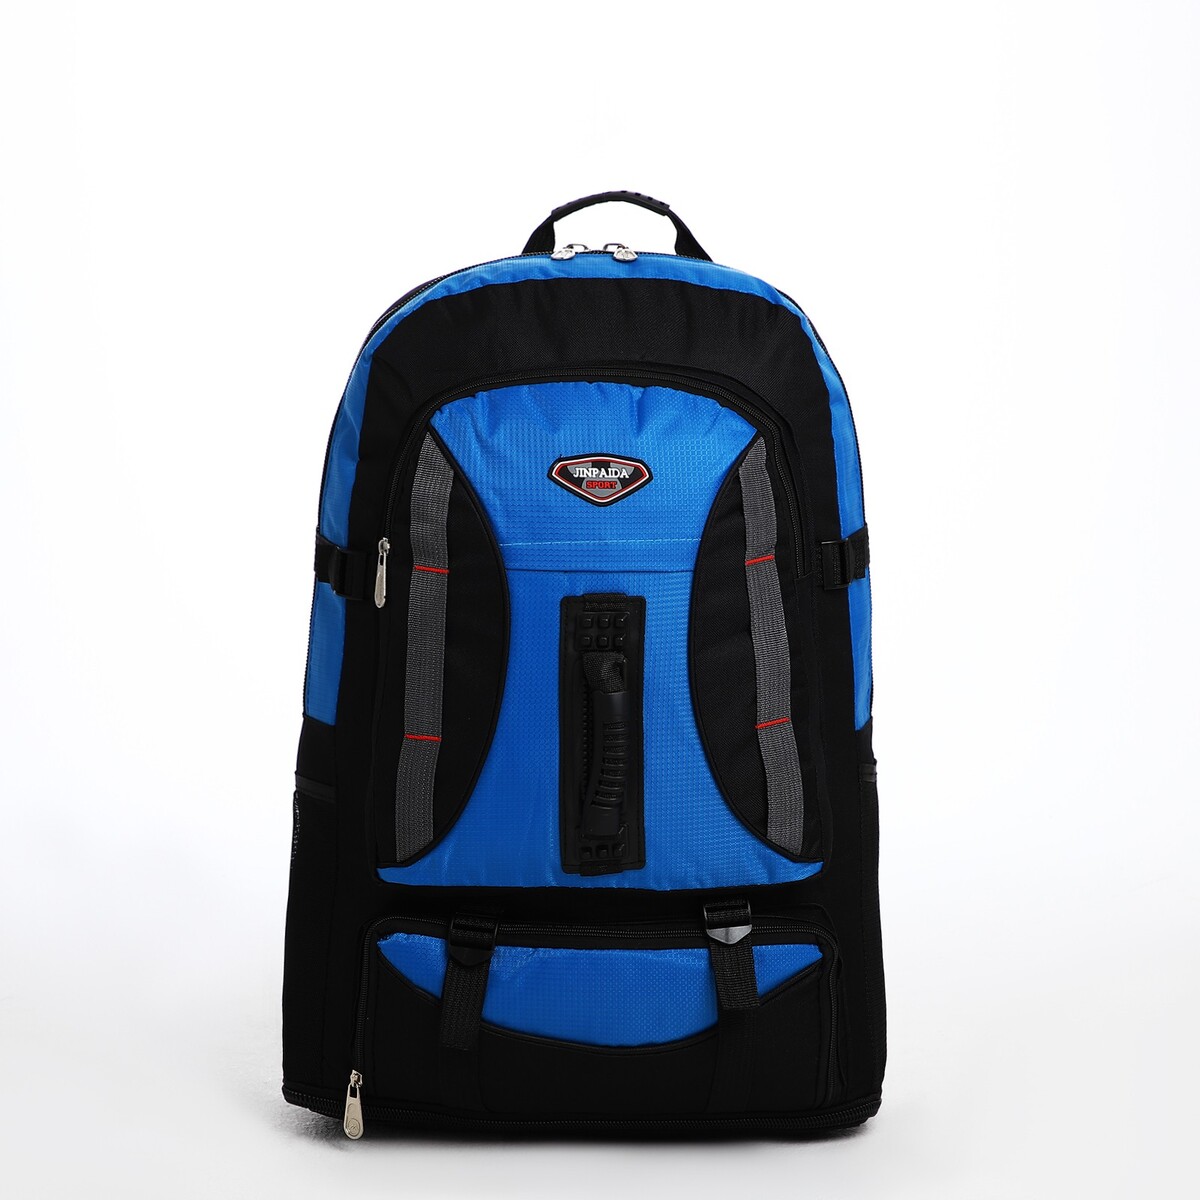 Рюкзак туристический на молнии, 4 наружных кармана, цвет синий/черный рюкзак детский на молнии 3 наружных кармана синий